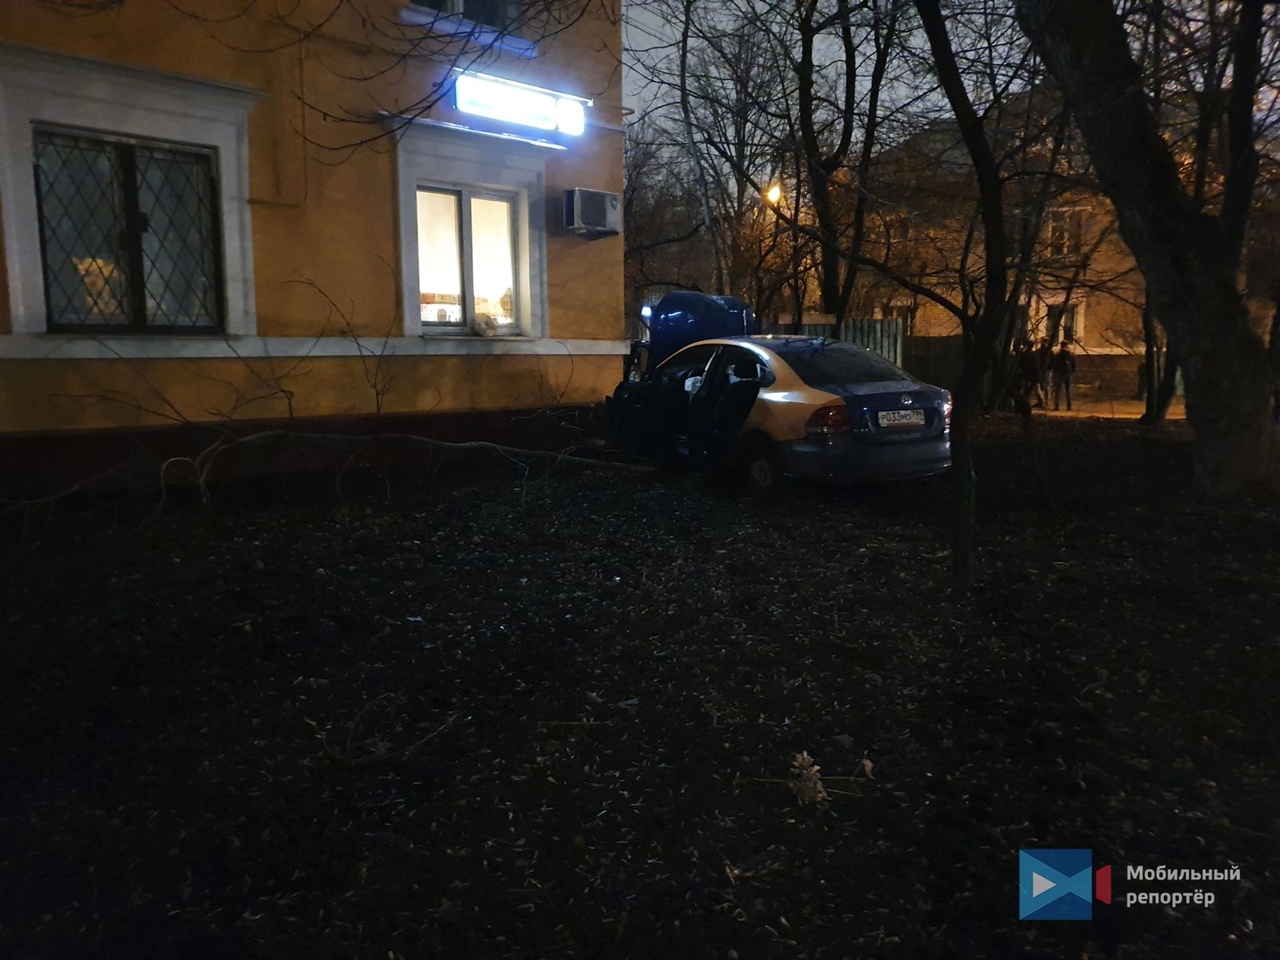 На юго-востоке Москвы водитель за рулем каршерингого автомобиля устроил ДТП и скрылся с места аварии...